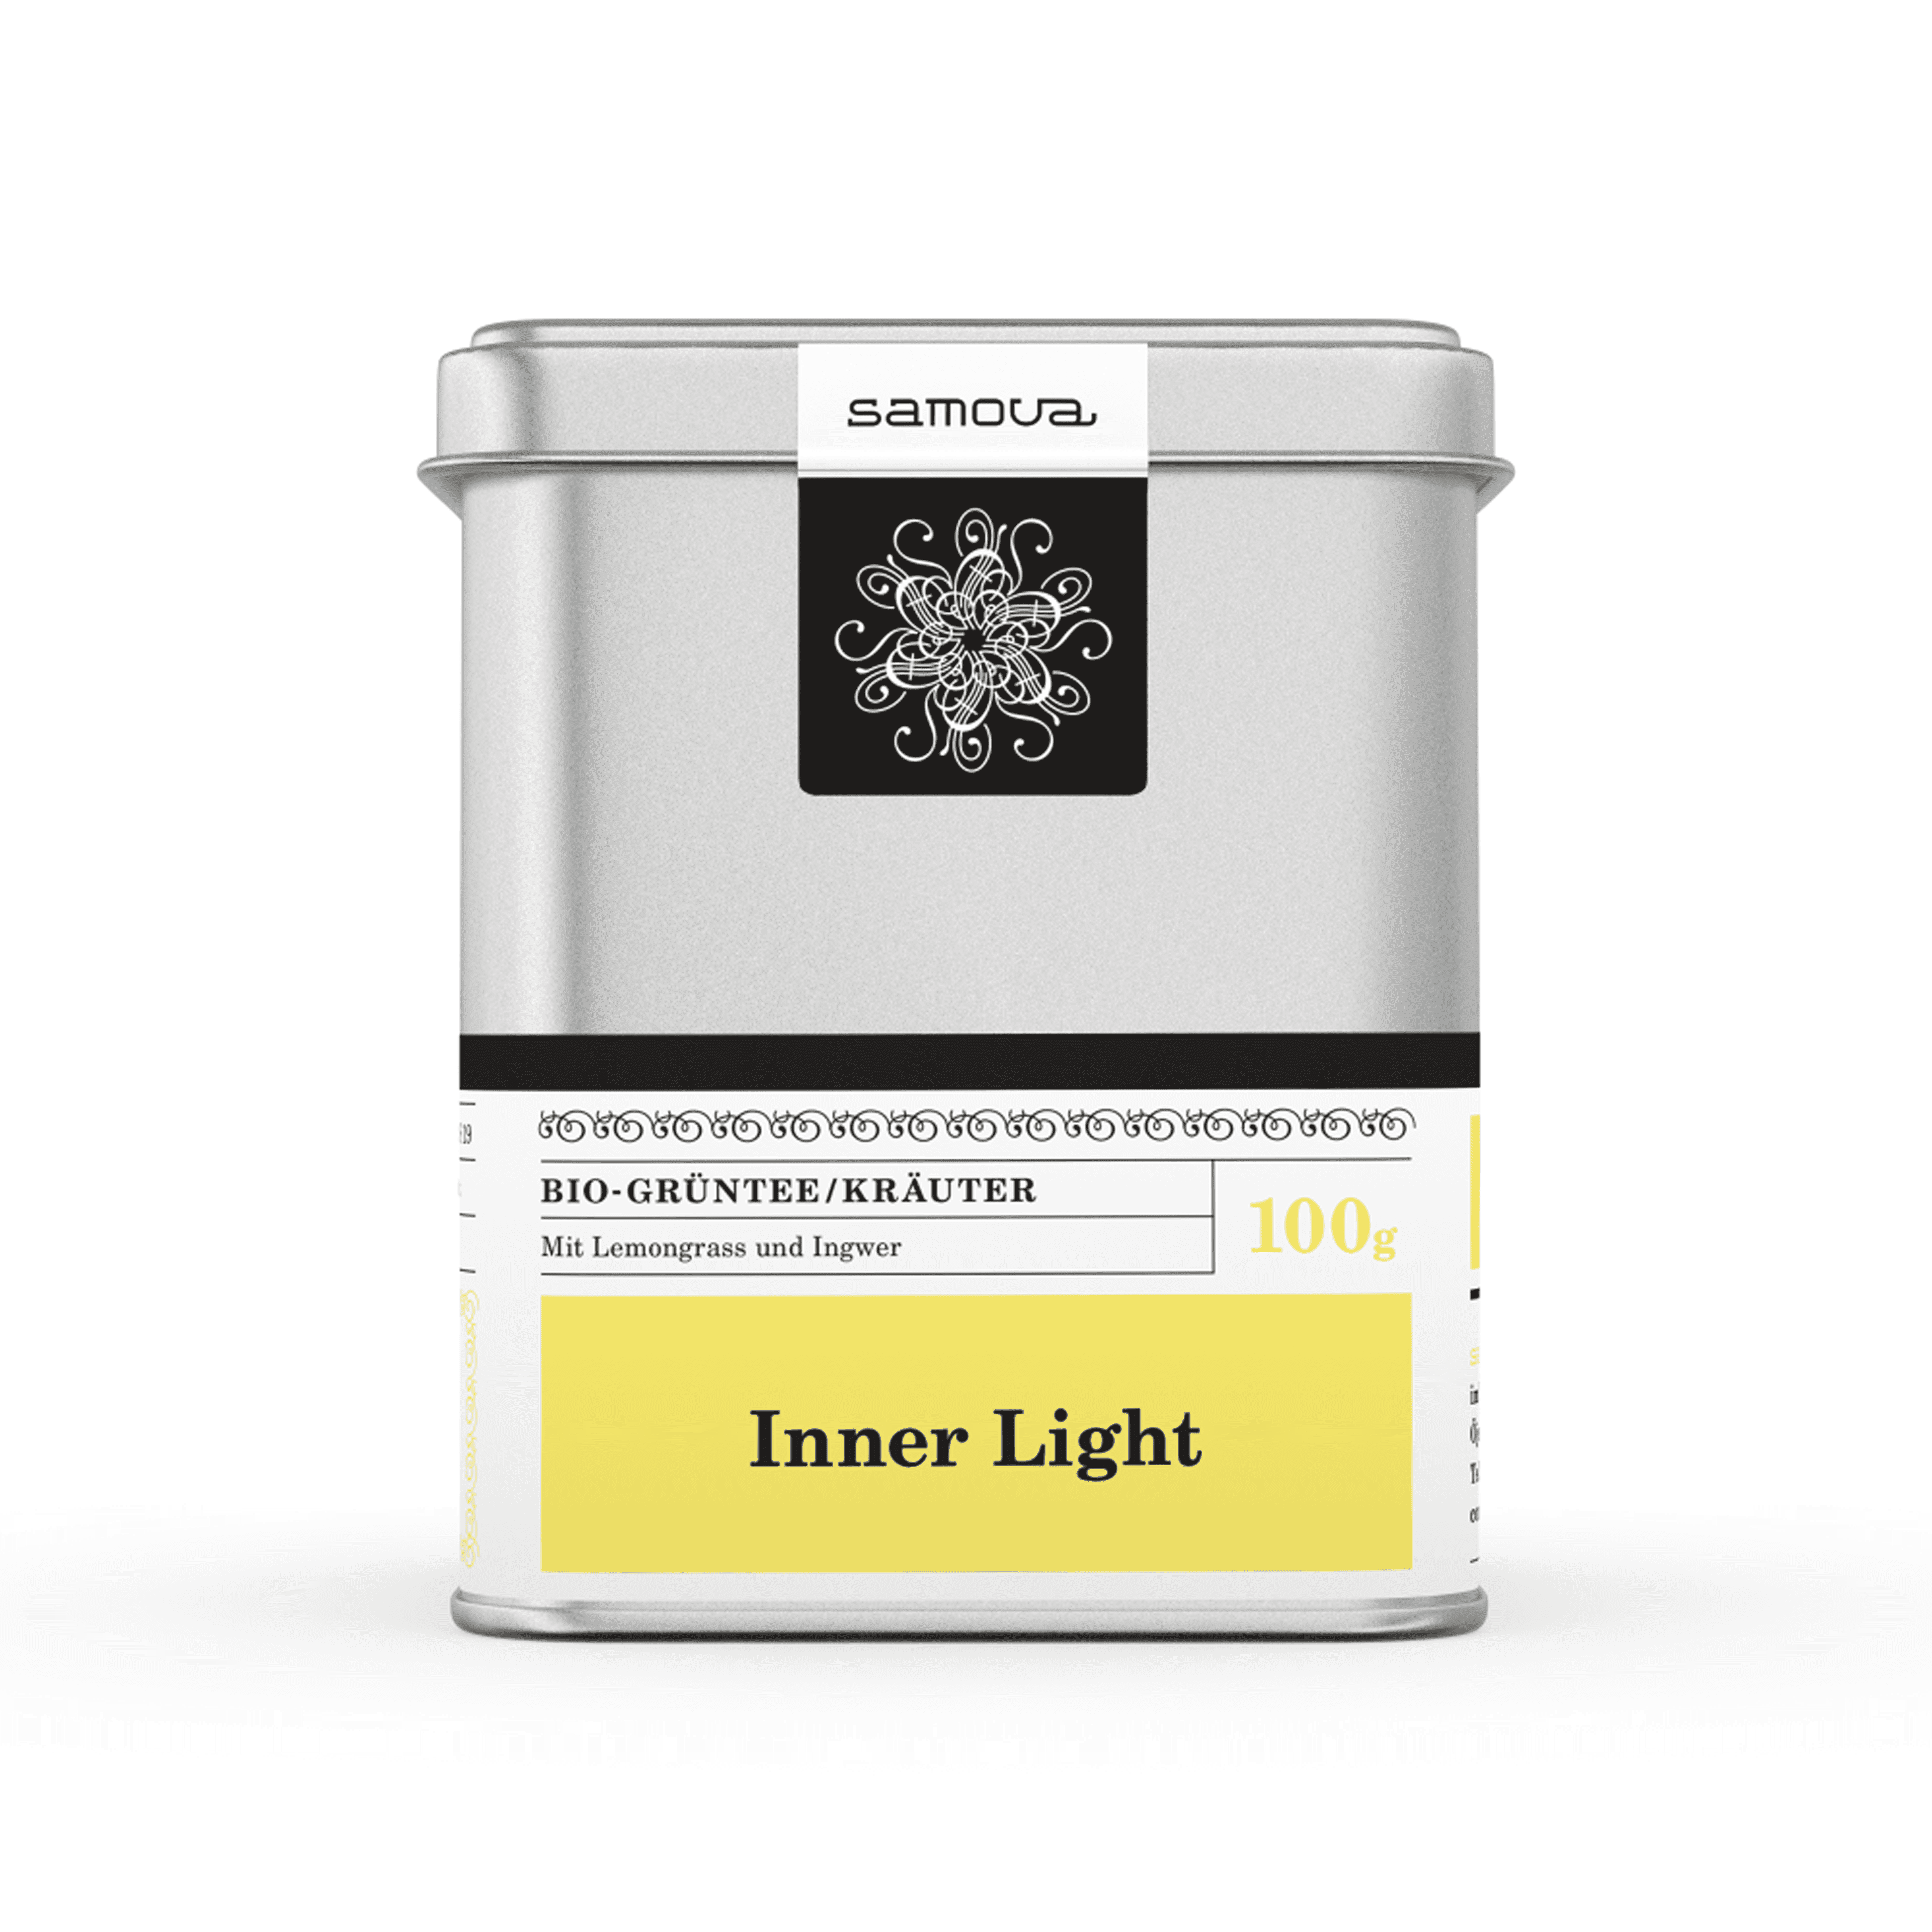 Can of Inner Light tea